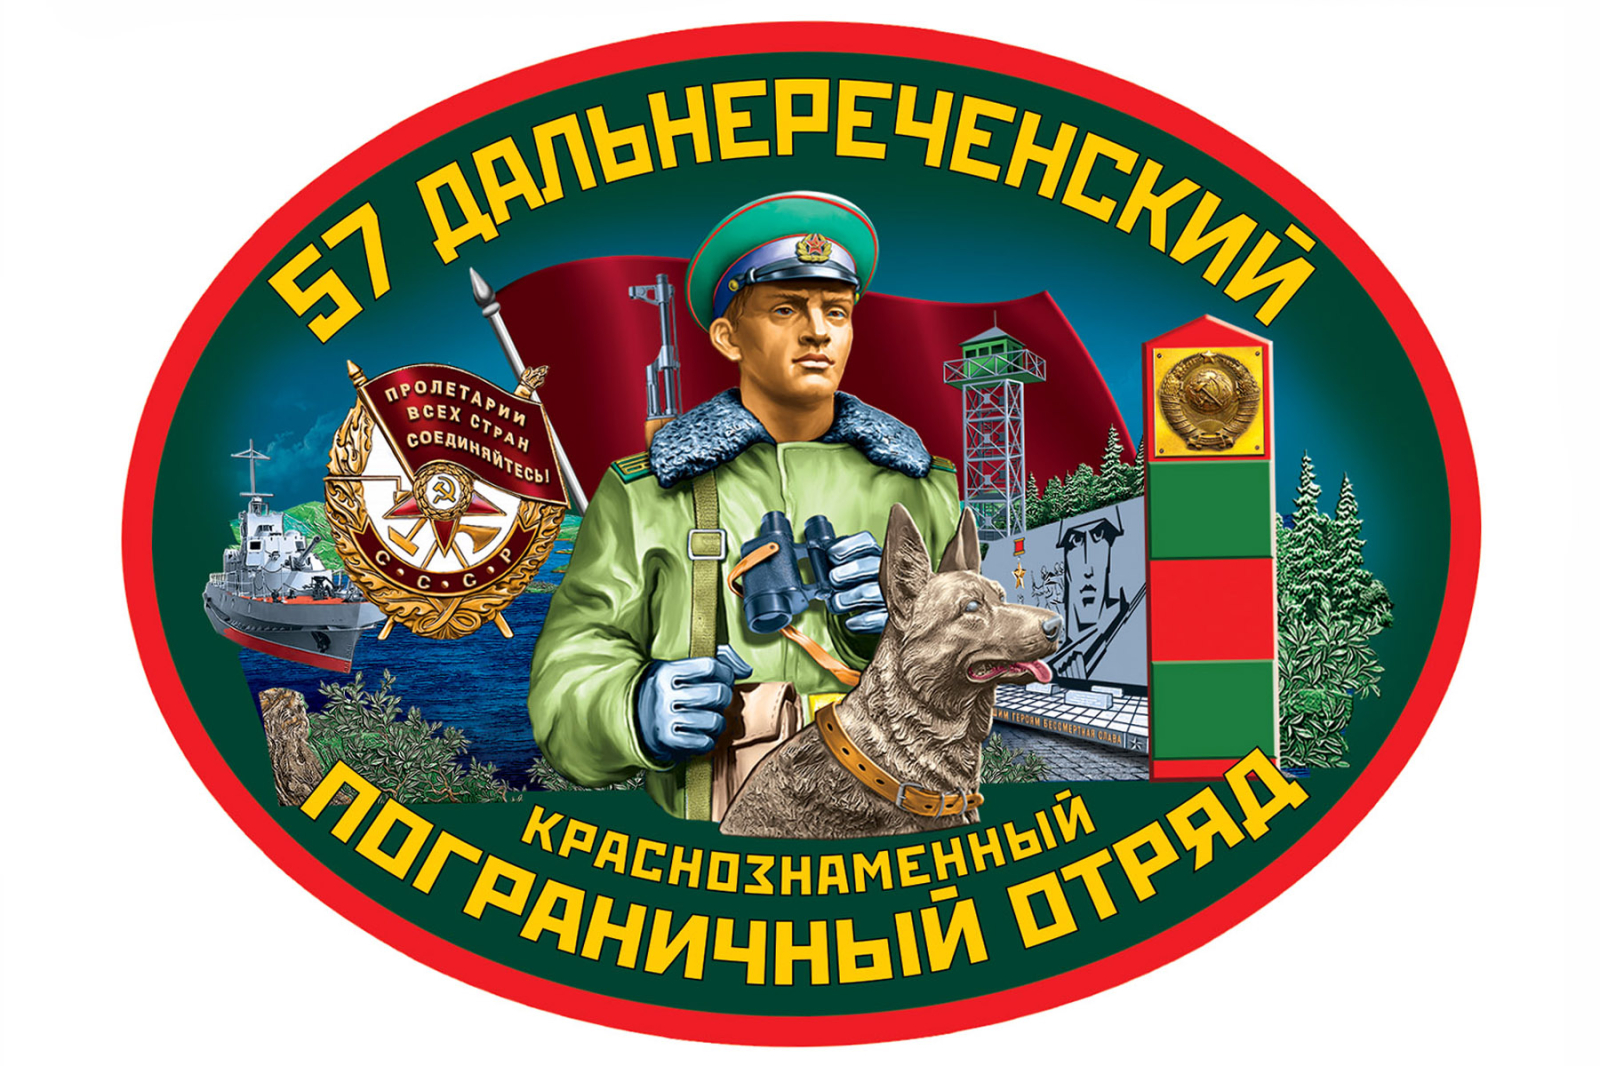 Наклейка на авто "57 Дальнереченский пограничный отряд"